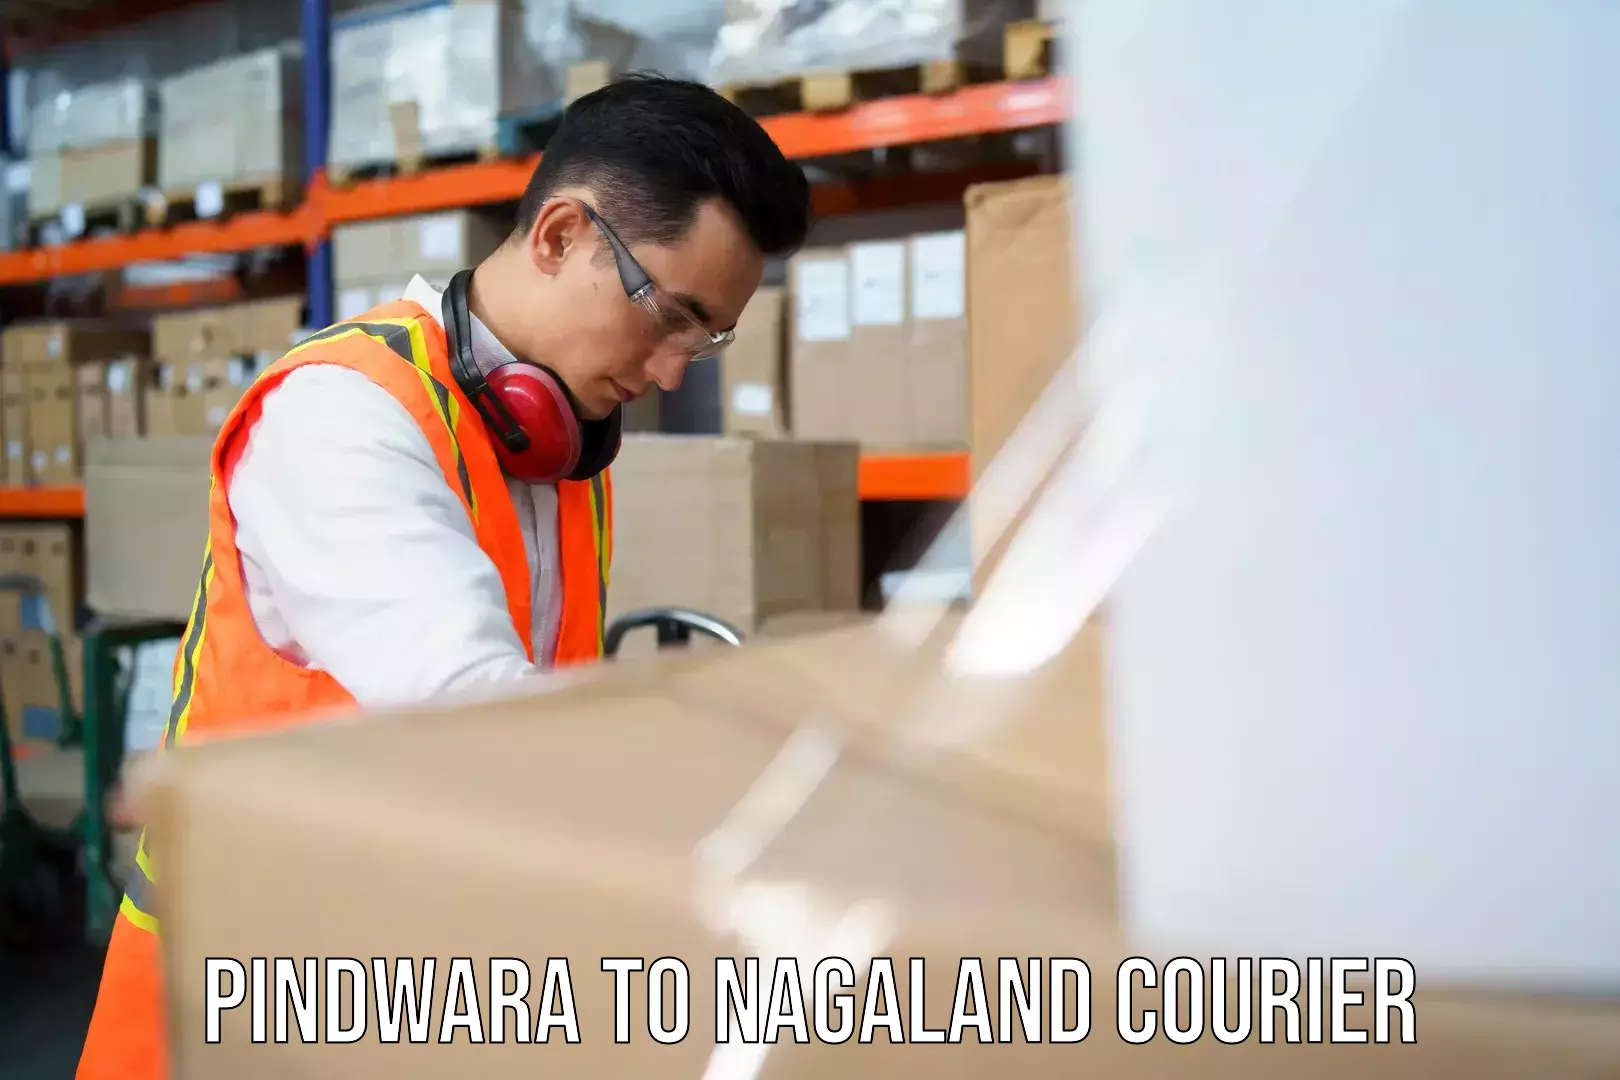 Express delivery capabilities Pindwara to Nagaland